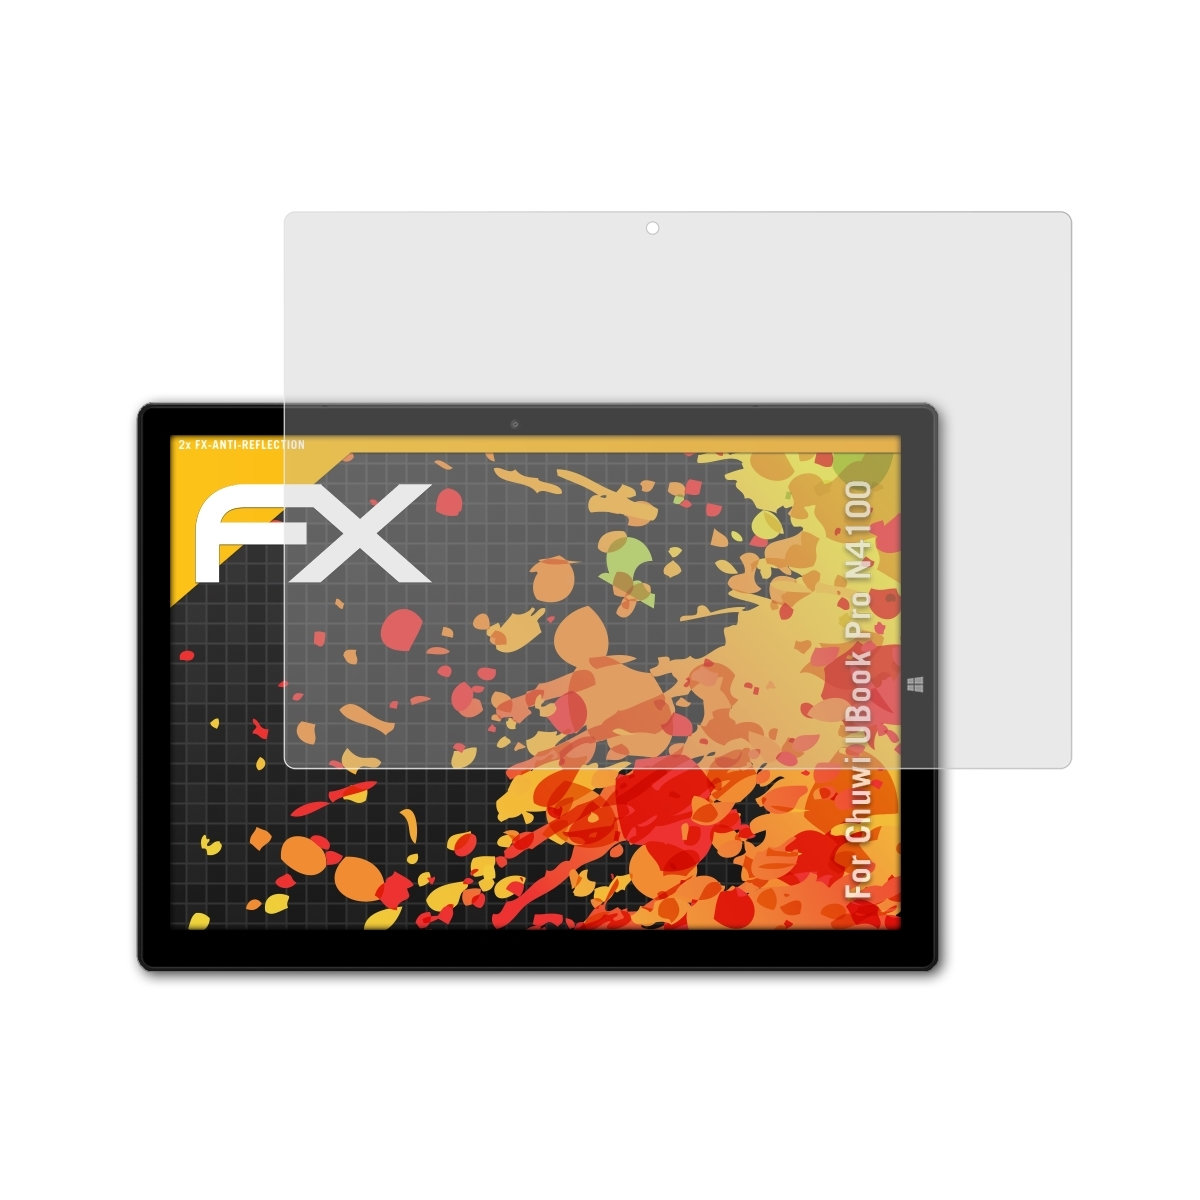 UBook ATFOLIX Pro N4100) Chuwi 2x FX-Antireflex Displayschutz(für